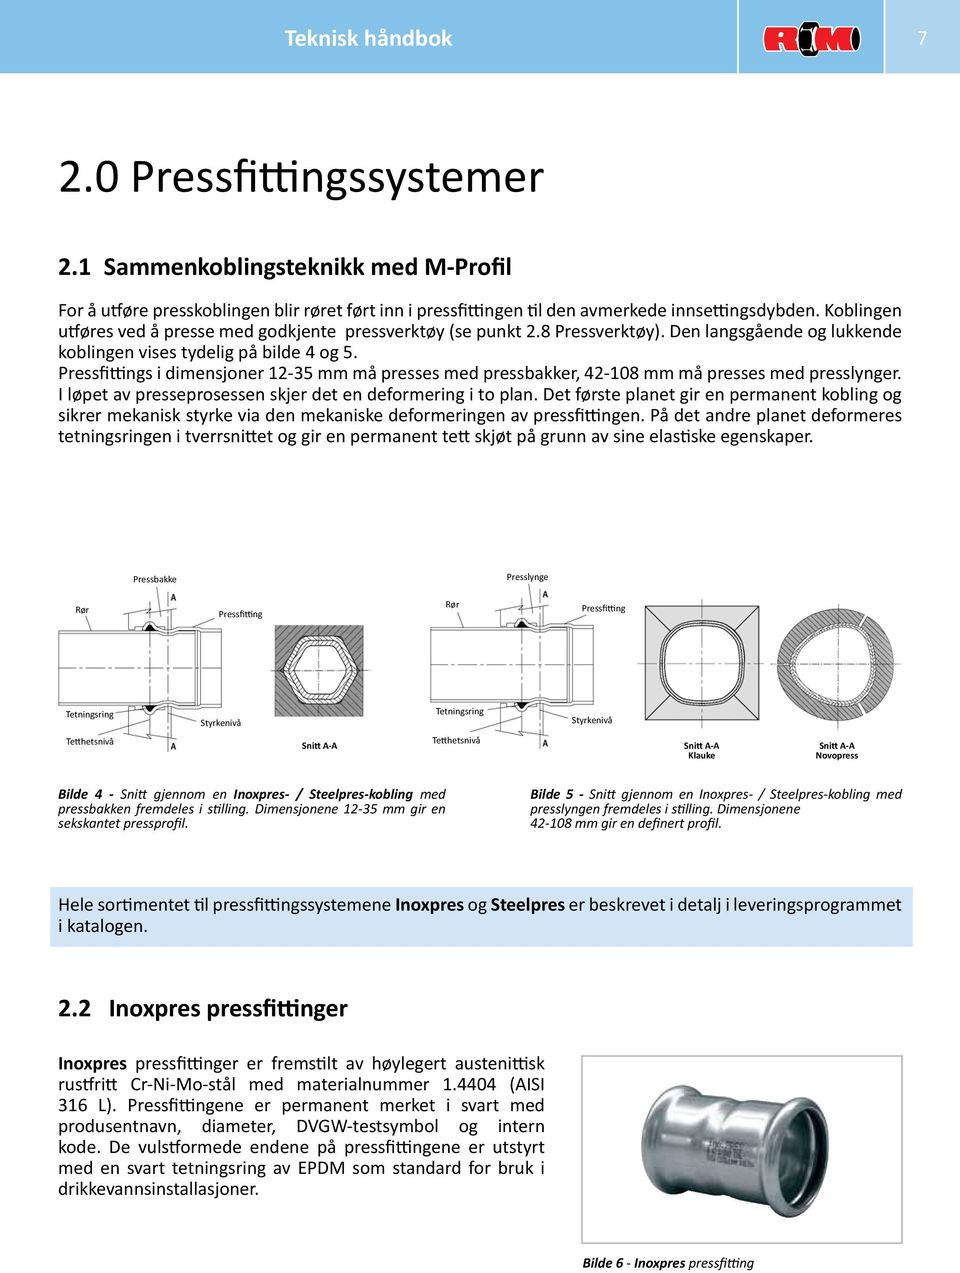 Pressfittings i dimensjoner 12-35 mm må presses med pressbakker, 42-108 mm må presses med presslynger. I løpet av presseprosessen skjer det en deformering i to plan.